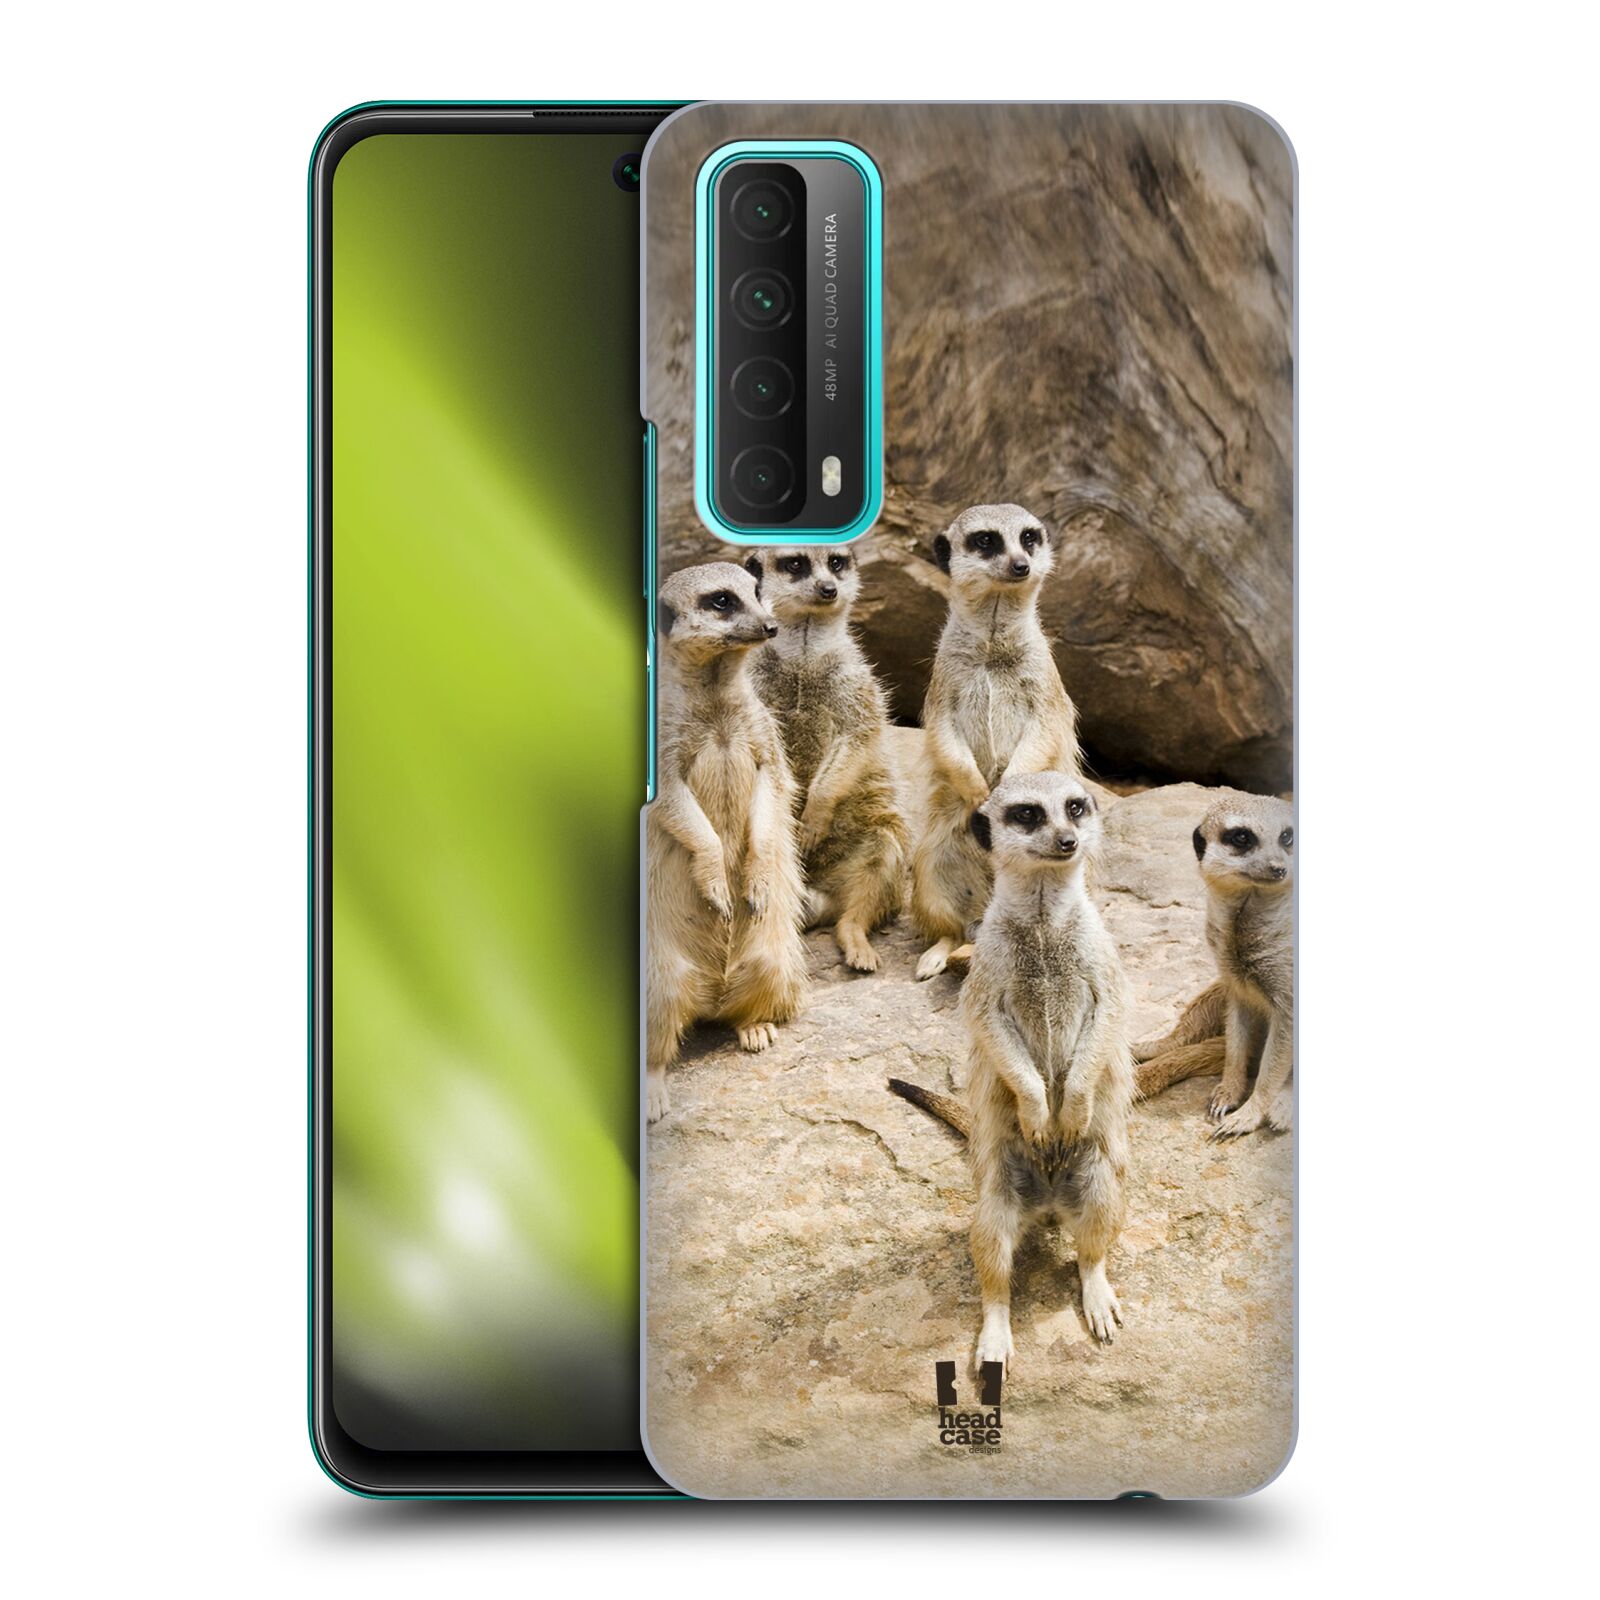 Zadní obal pro mobil Huawei P SMART 2021 - HEAD CASE - Svět zvířat roztomilé surikaty